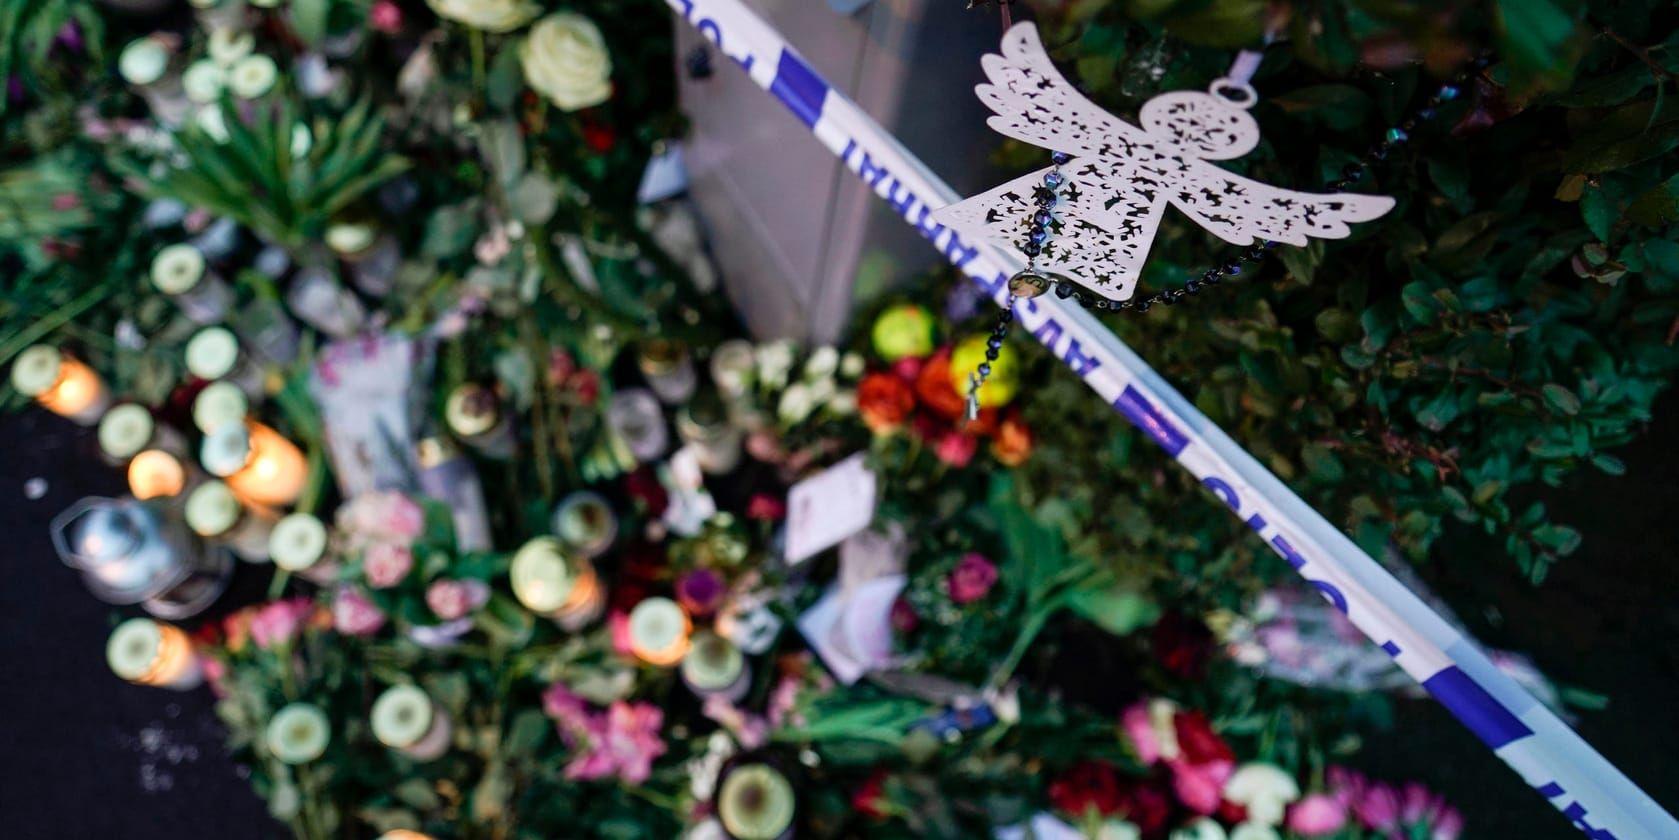 Blommor och ljus utanför villan i Bjärred där fyra familjemedlemmar hittades döda i början av året. Arkivbild.